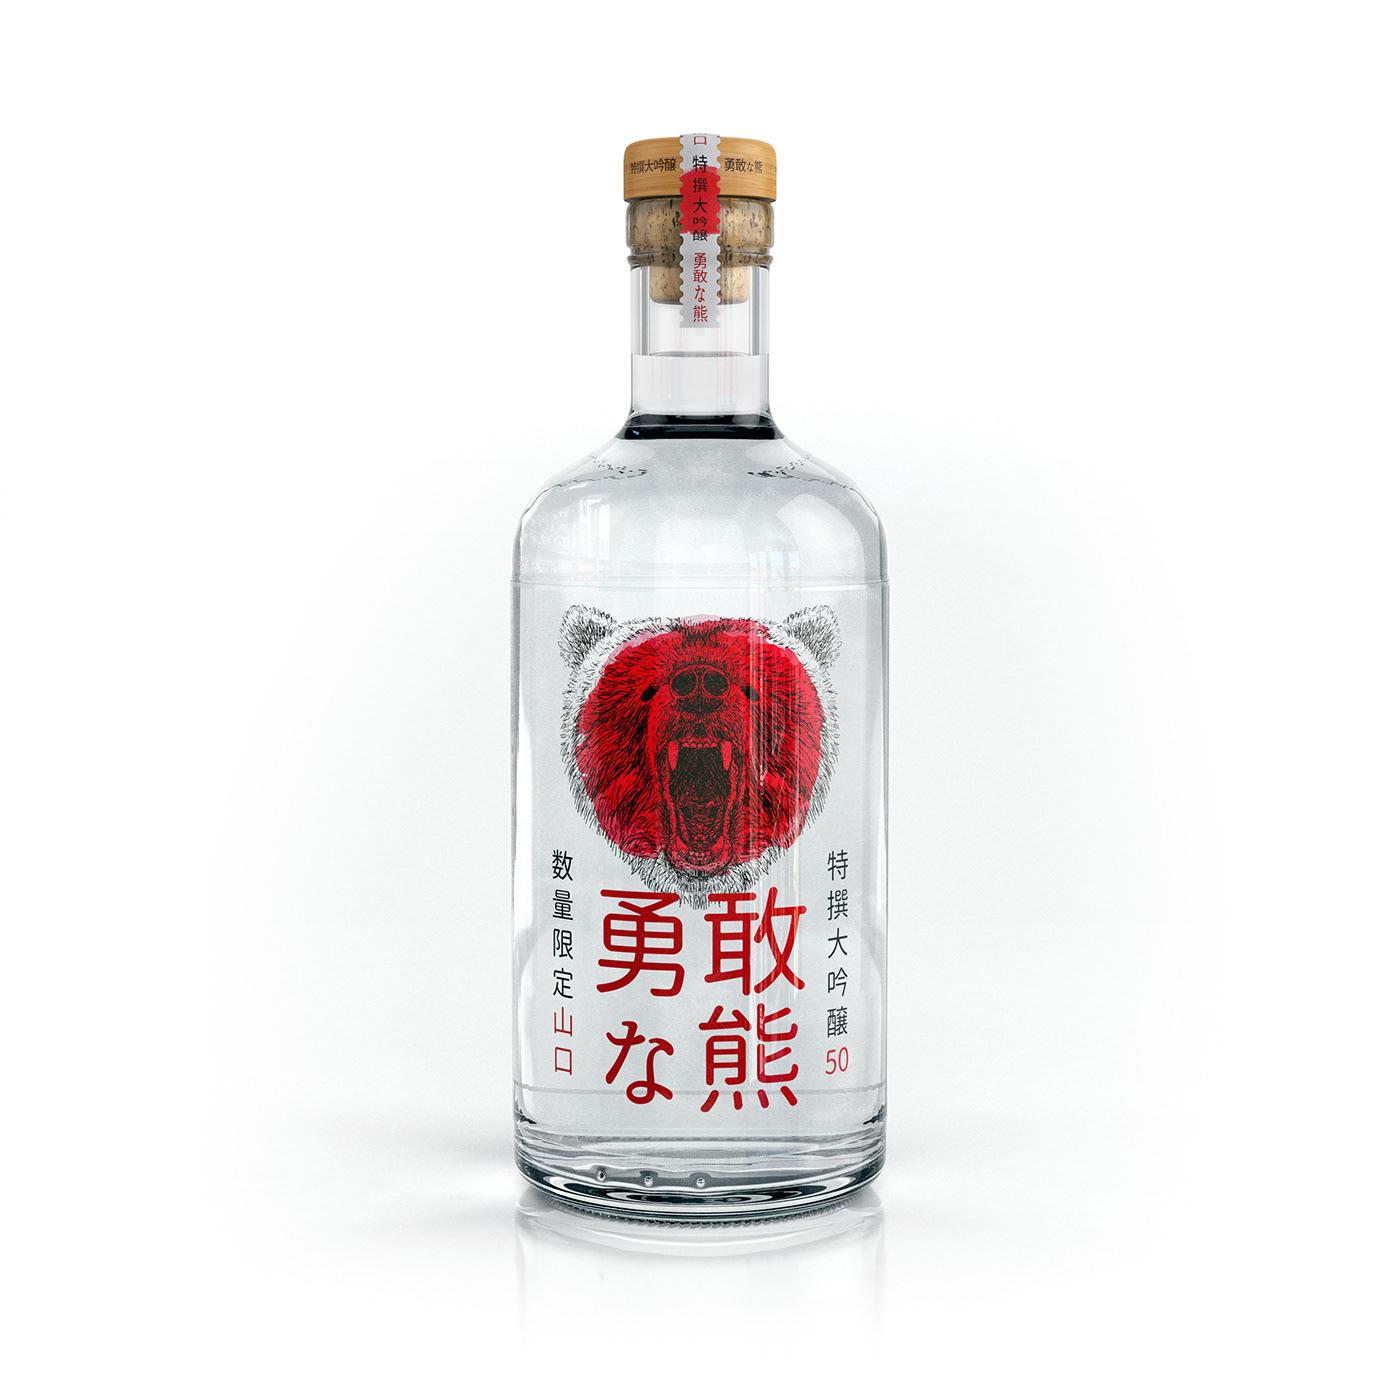 Sake Packaging bottle glass 3D CGI drink japan Label red